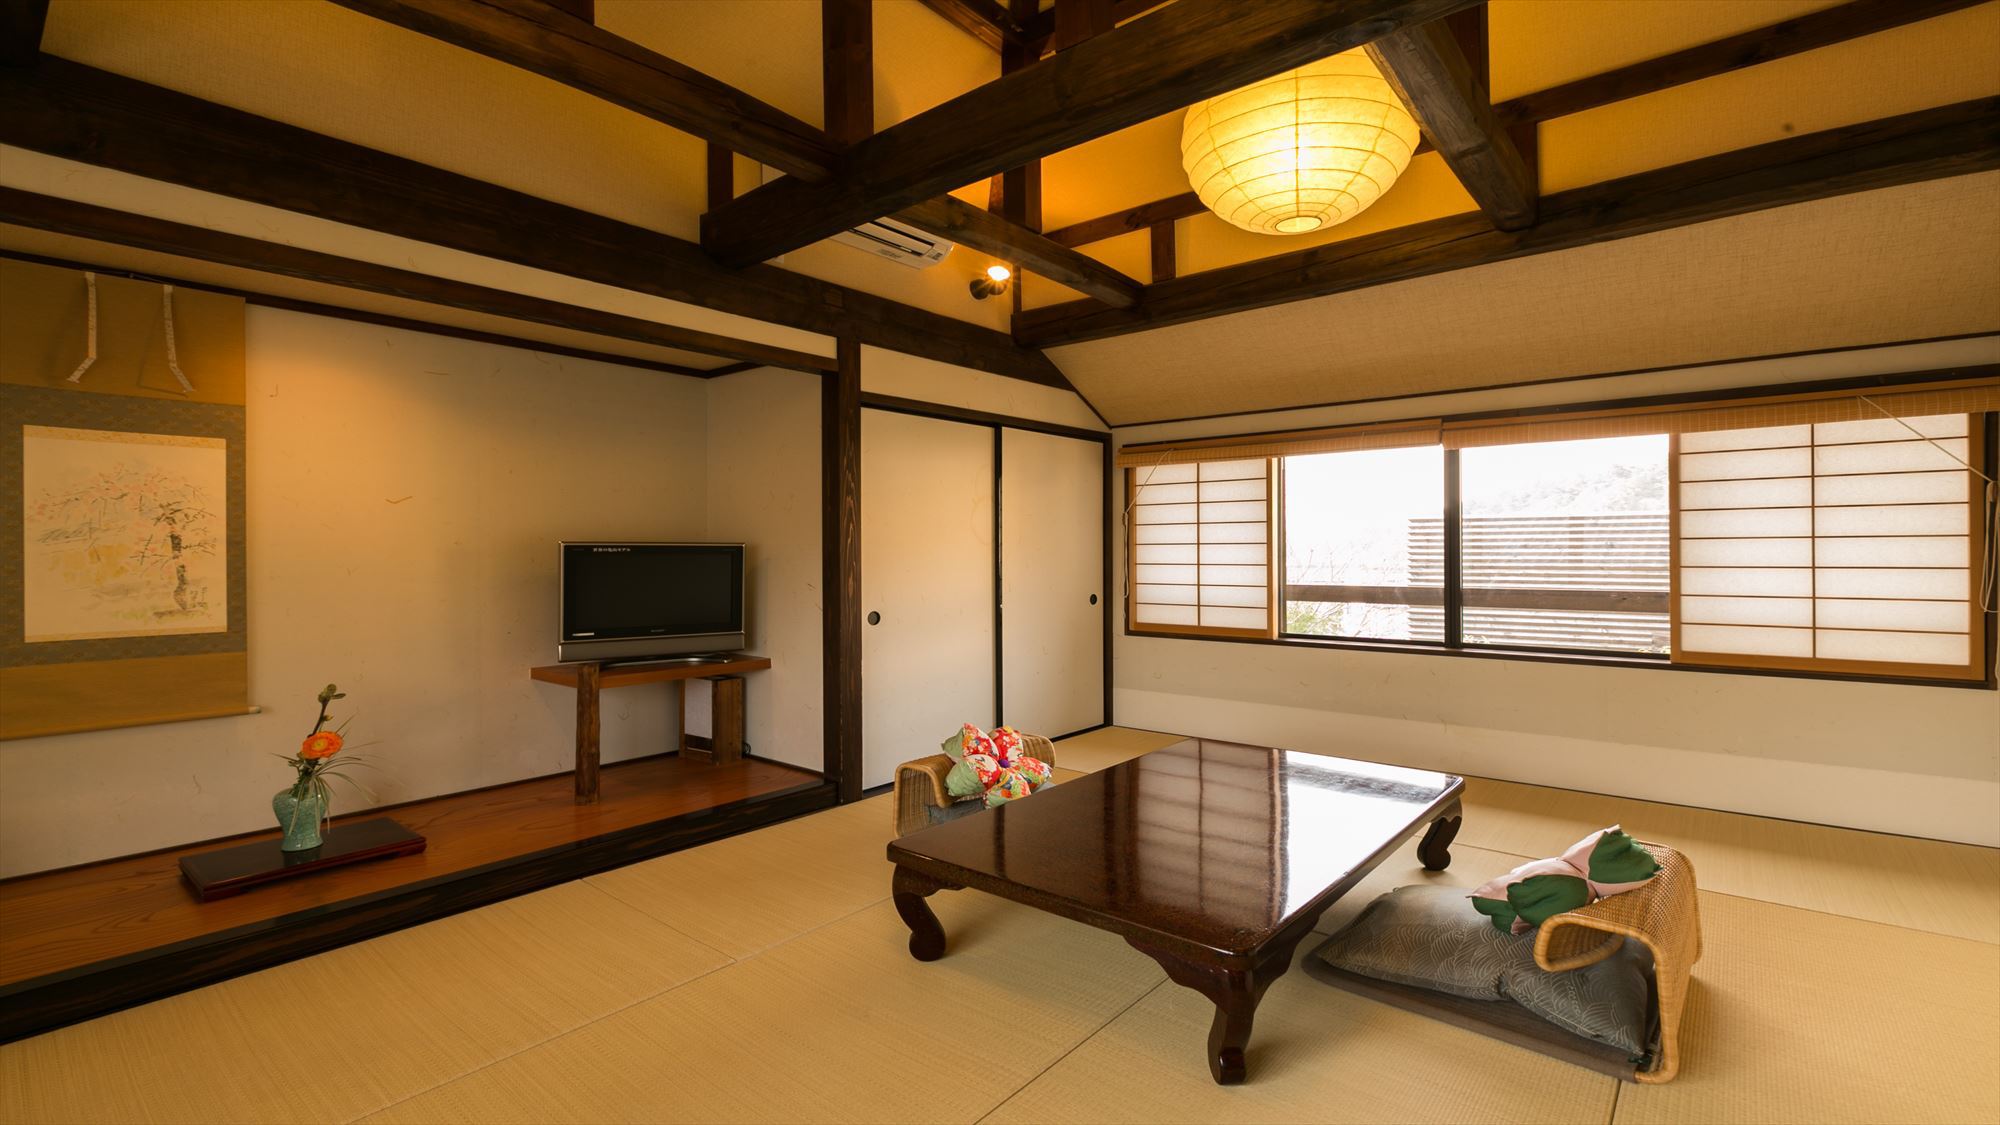 鹿鳴山荘風呂付き客室【菖蒲】ロッジ風の天井の梁が特徴です